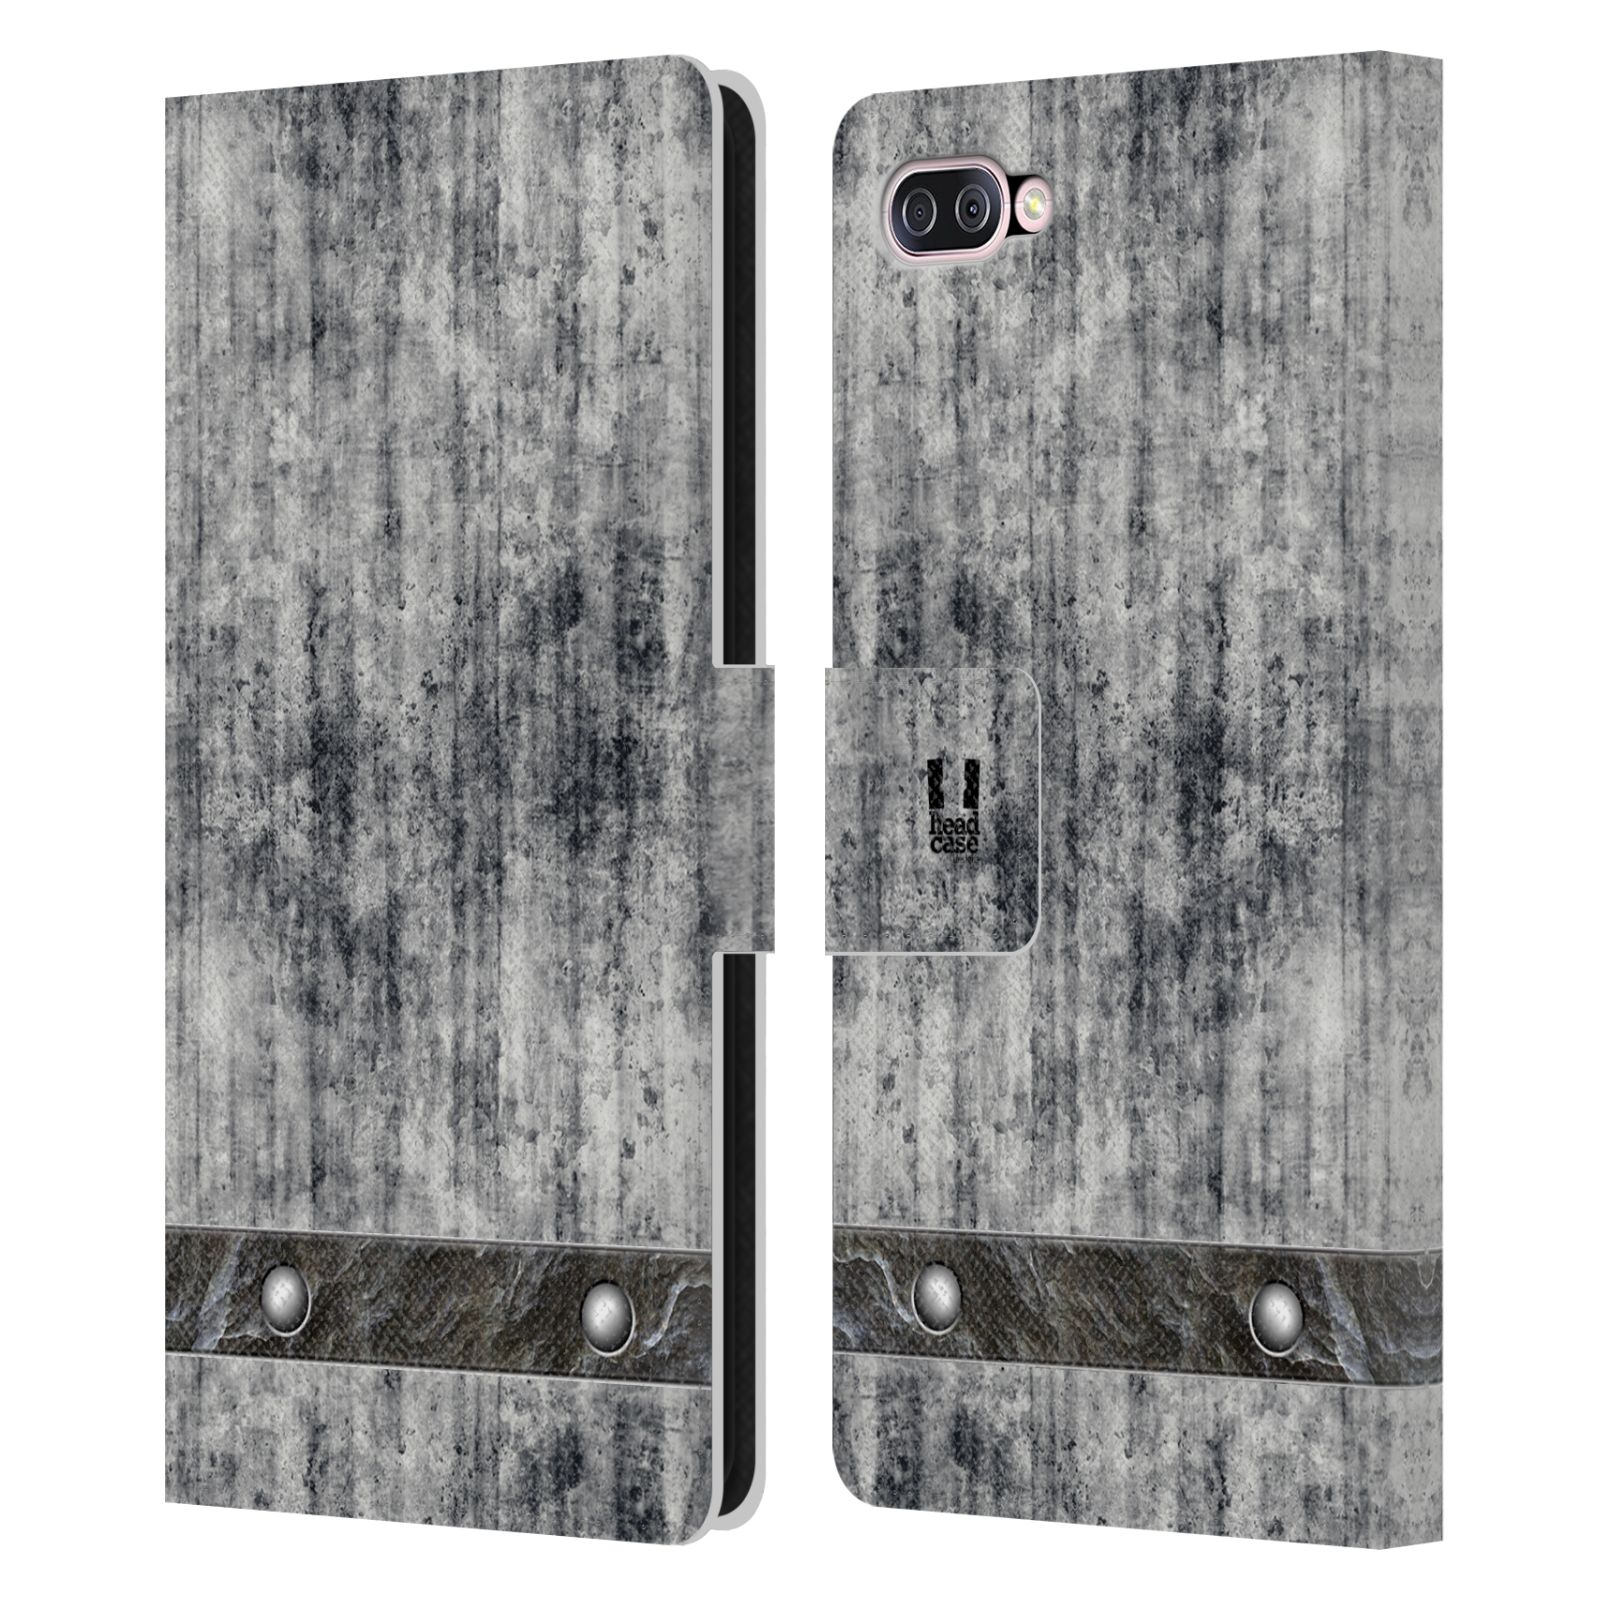 Pouzdro pro mobil Asus Zenfone 4 Max (ZC554KL)  - Stavební textura šedý beton